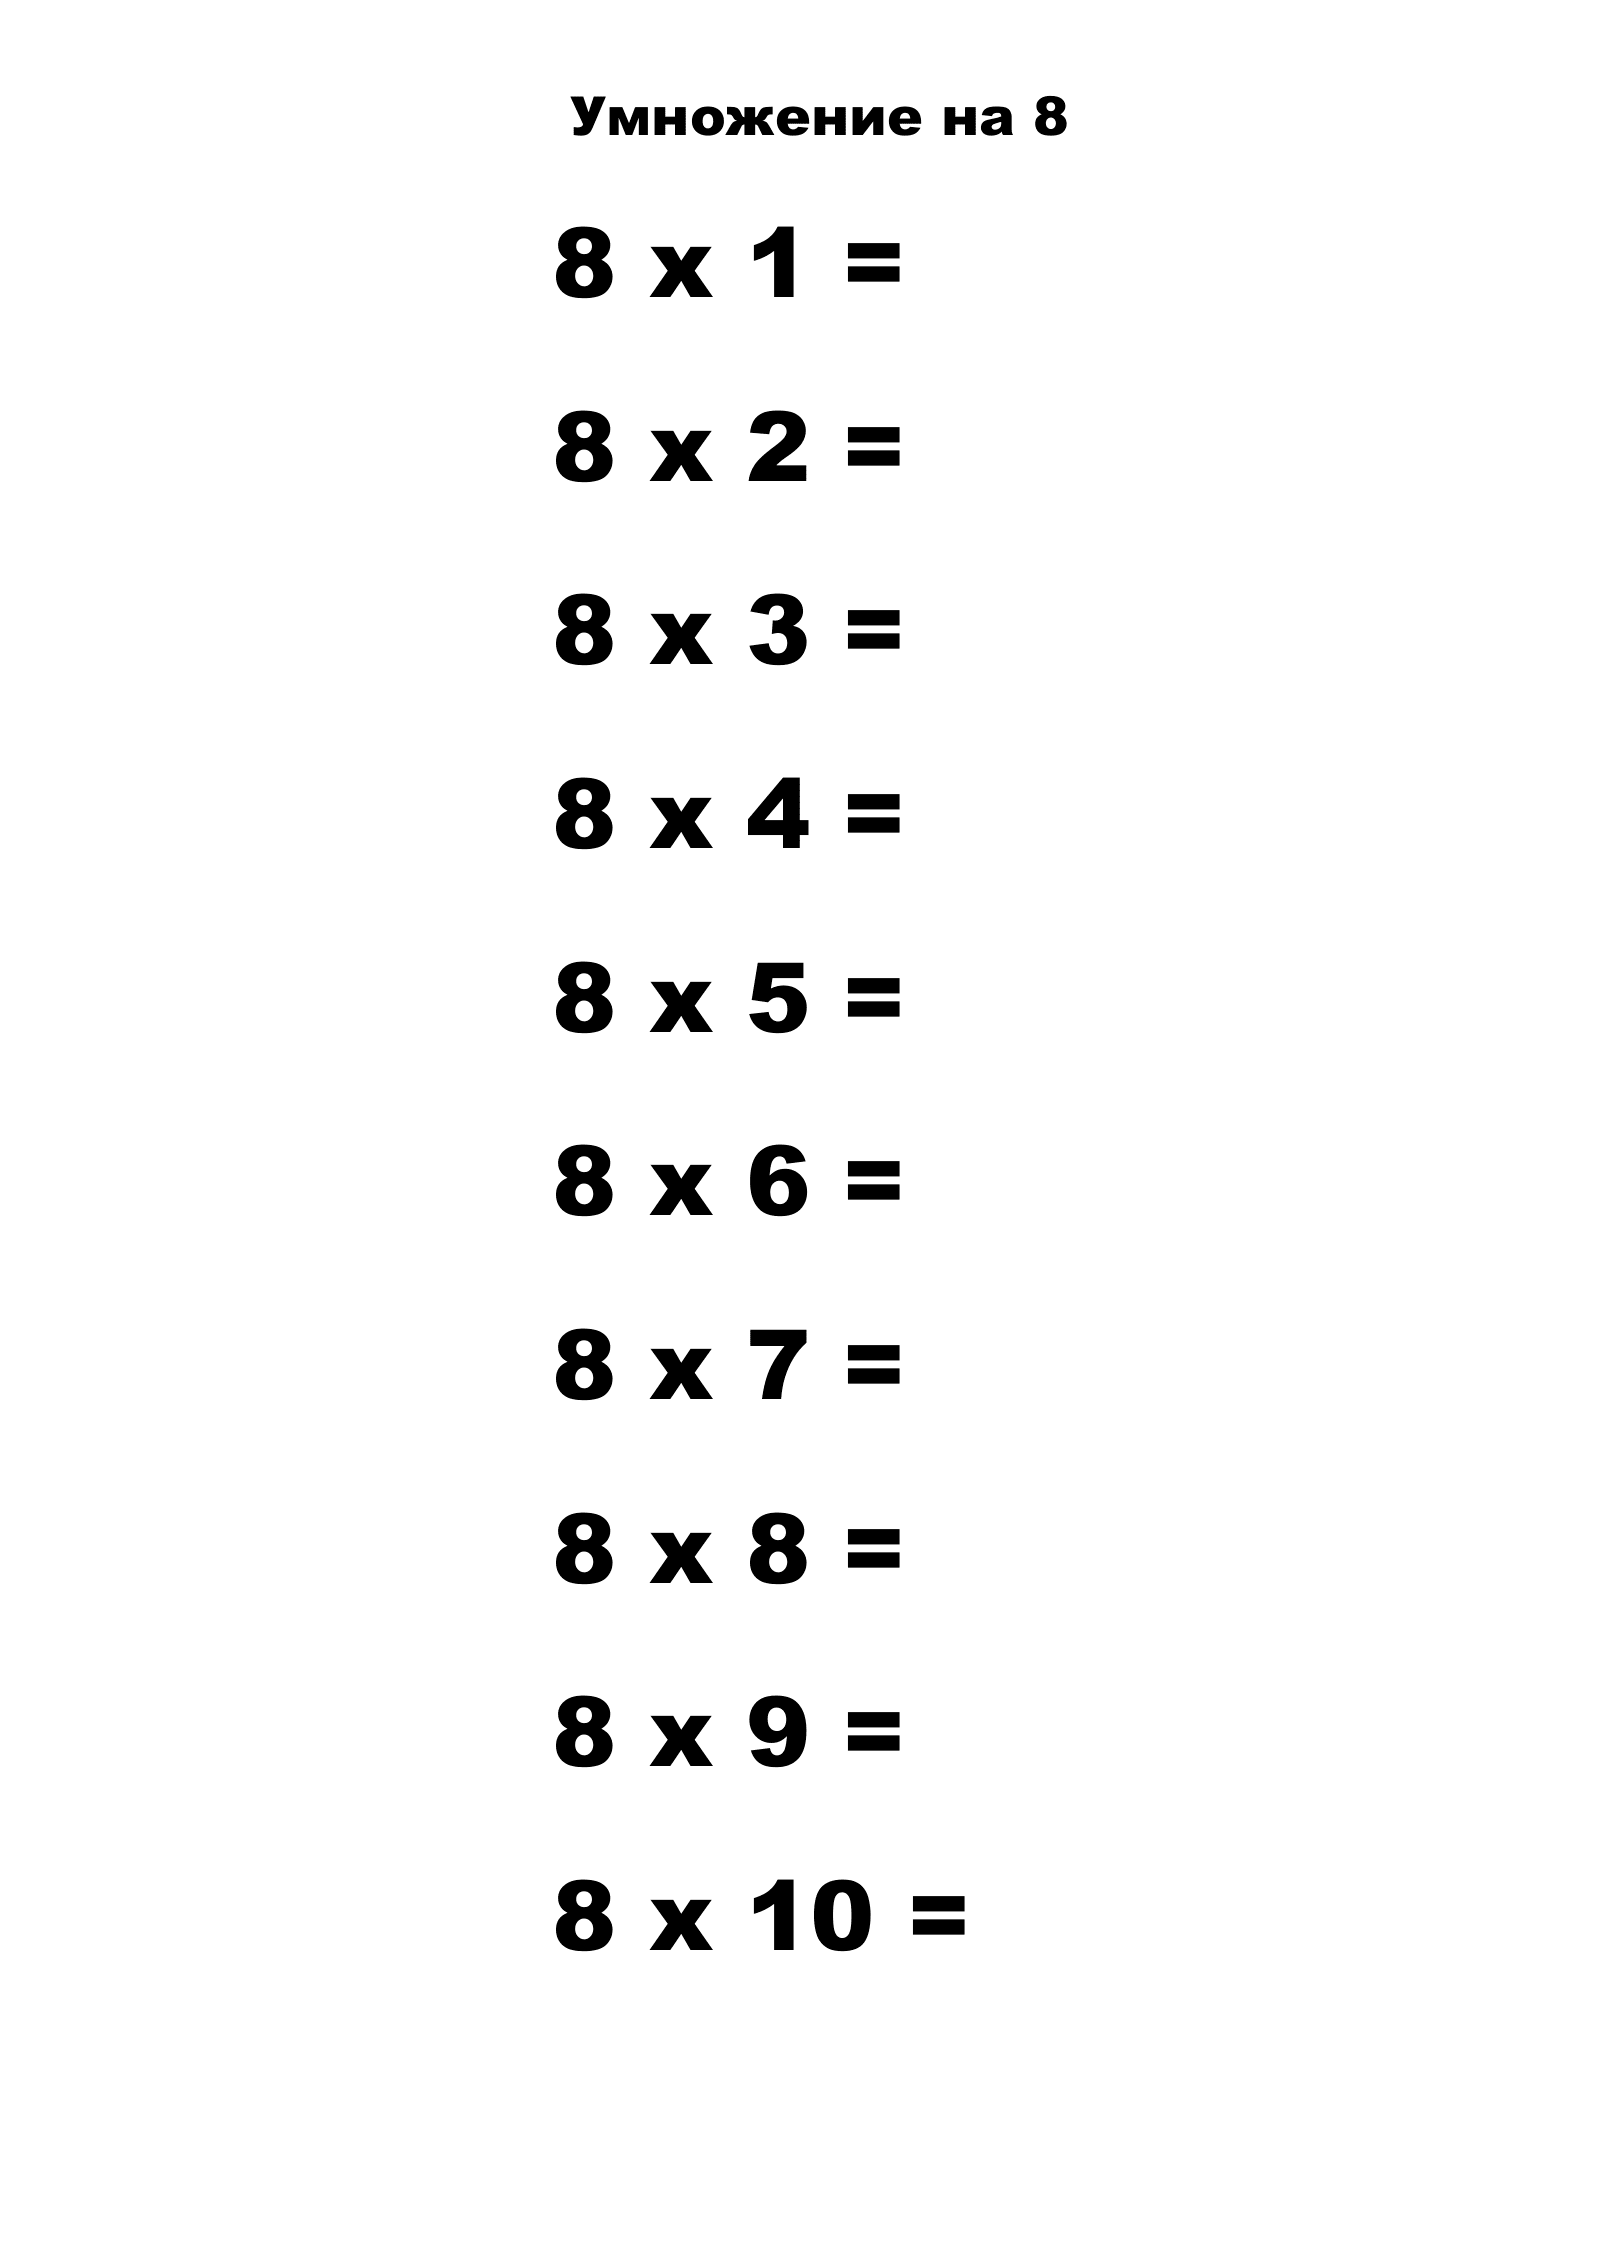 Таблица умножения на 8 без ответов. Распечатать